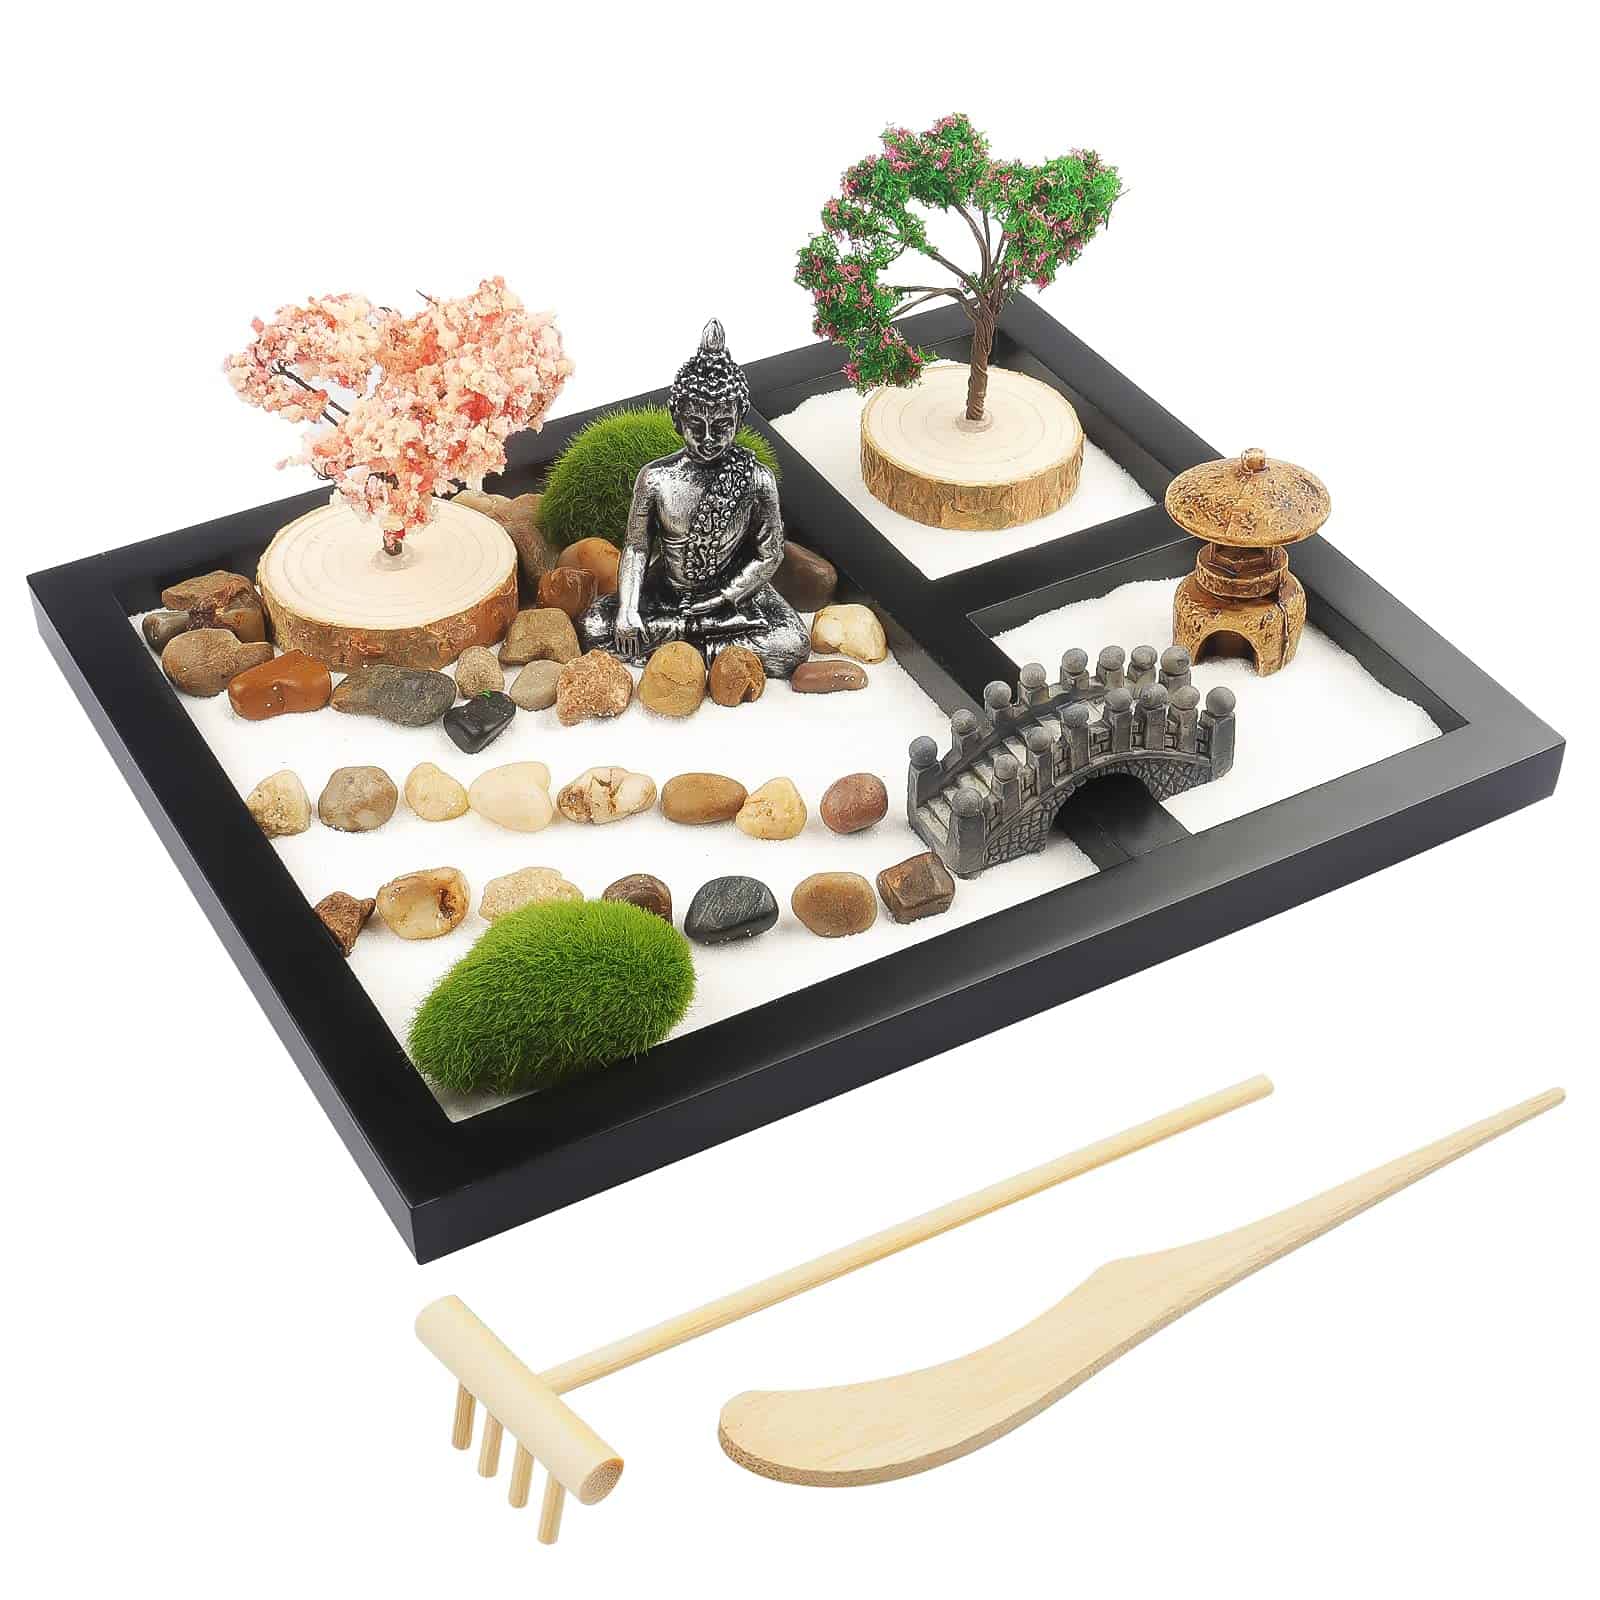 Create your mini zen garden